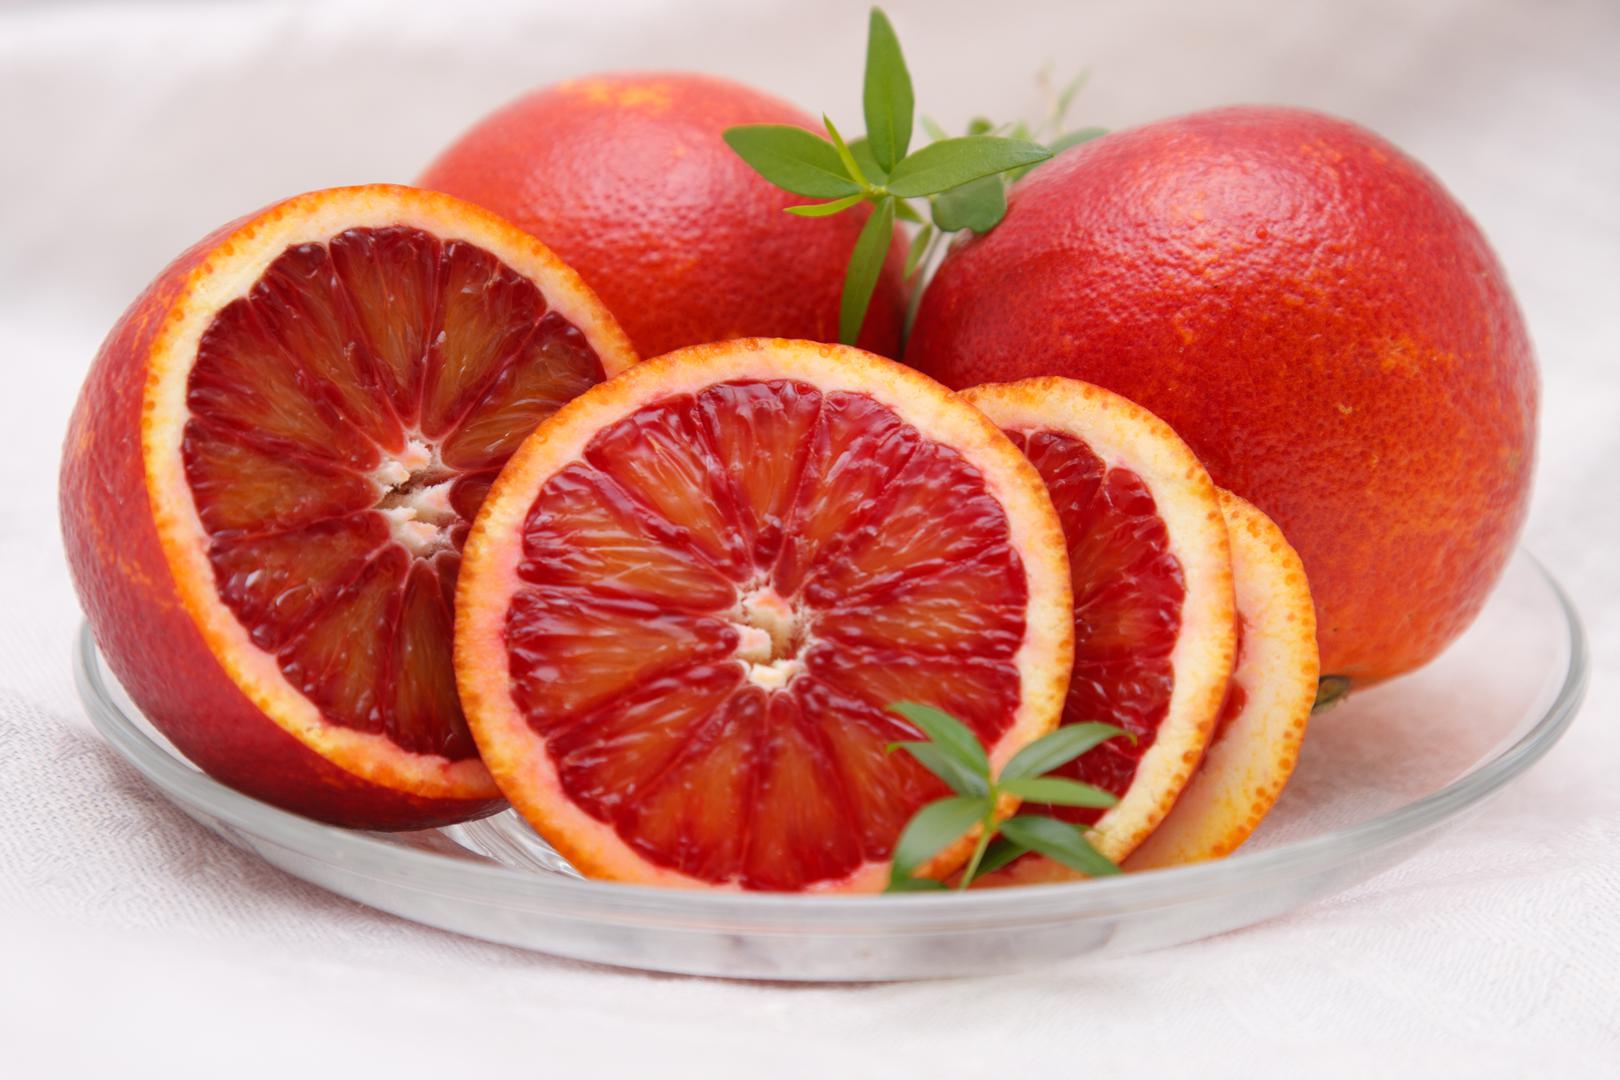 Naranče - Naranče nećete u supermarketima naći u hladnjaku, ali upravo biste ih tamo trebali držati dok ih ne konzumirate. Nakon branja, počinje opadati količina vitamina C u njima, a taj se proces usporava na nižim temperaturama. 